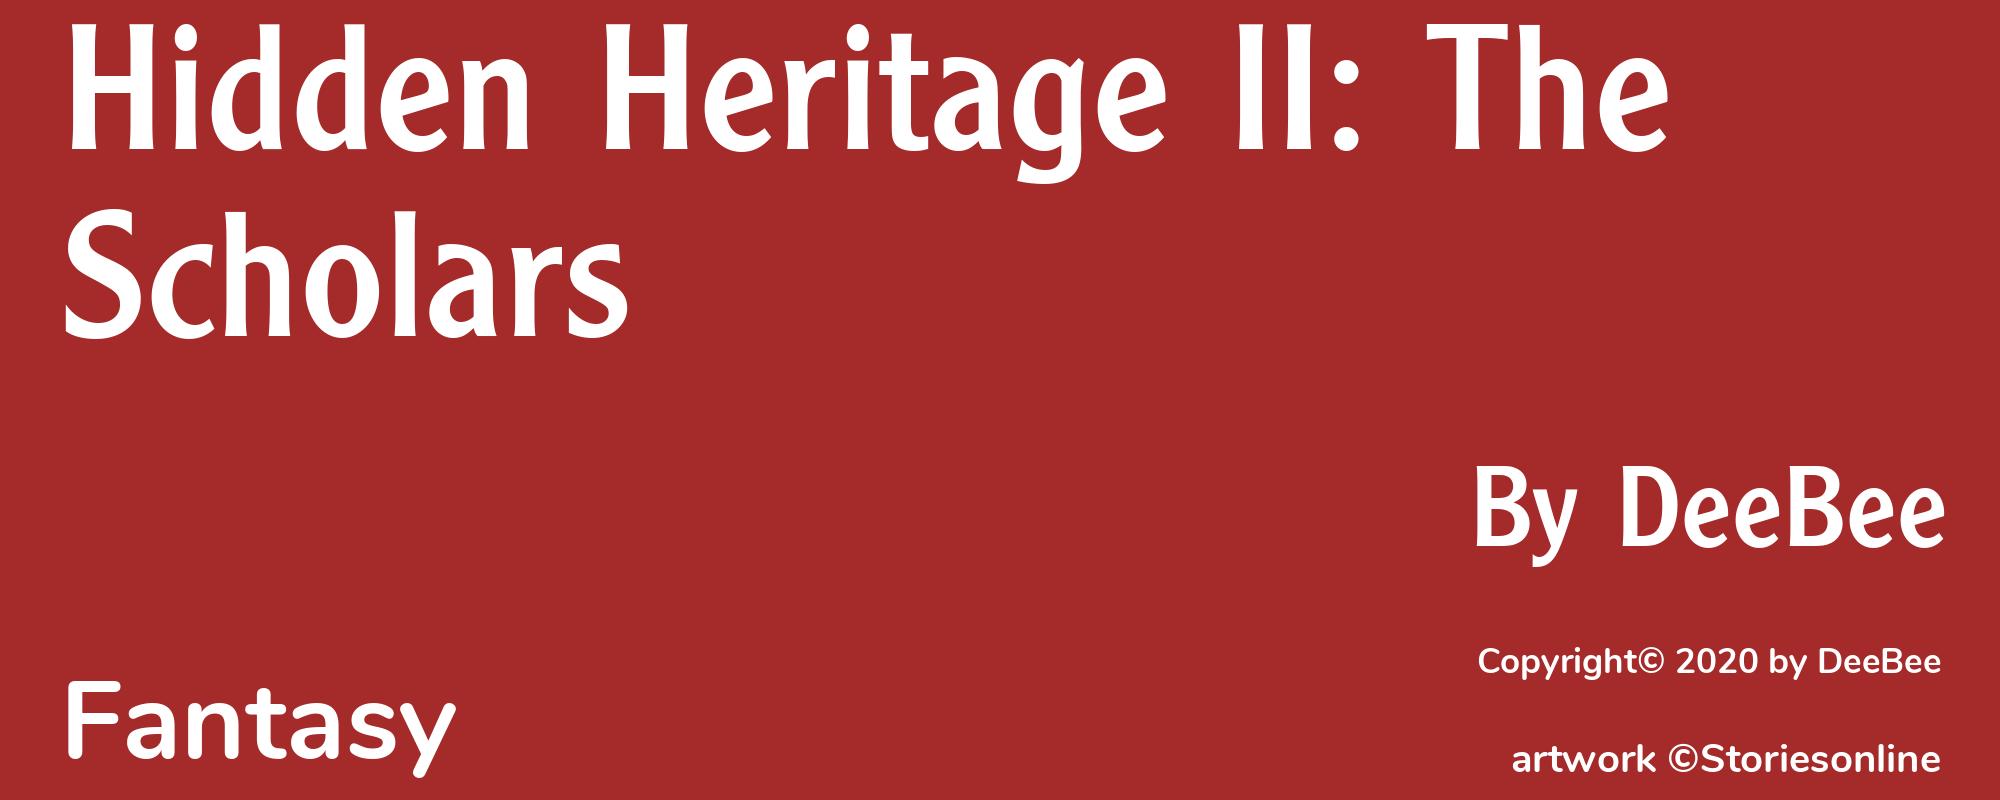 Hidden Heritage II: The Scholars - Cover